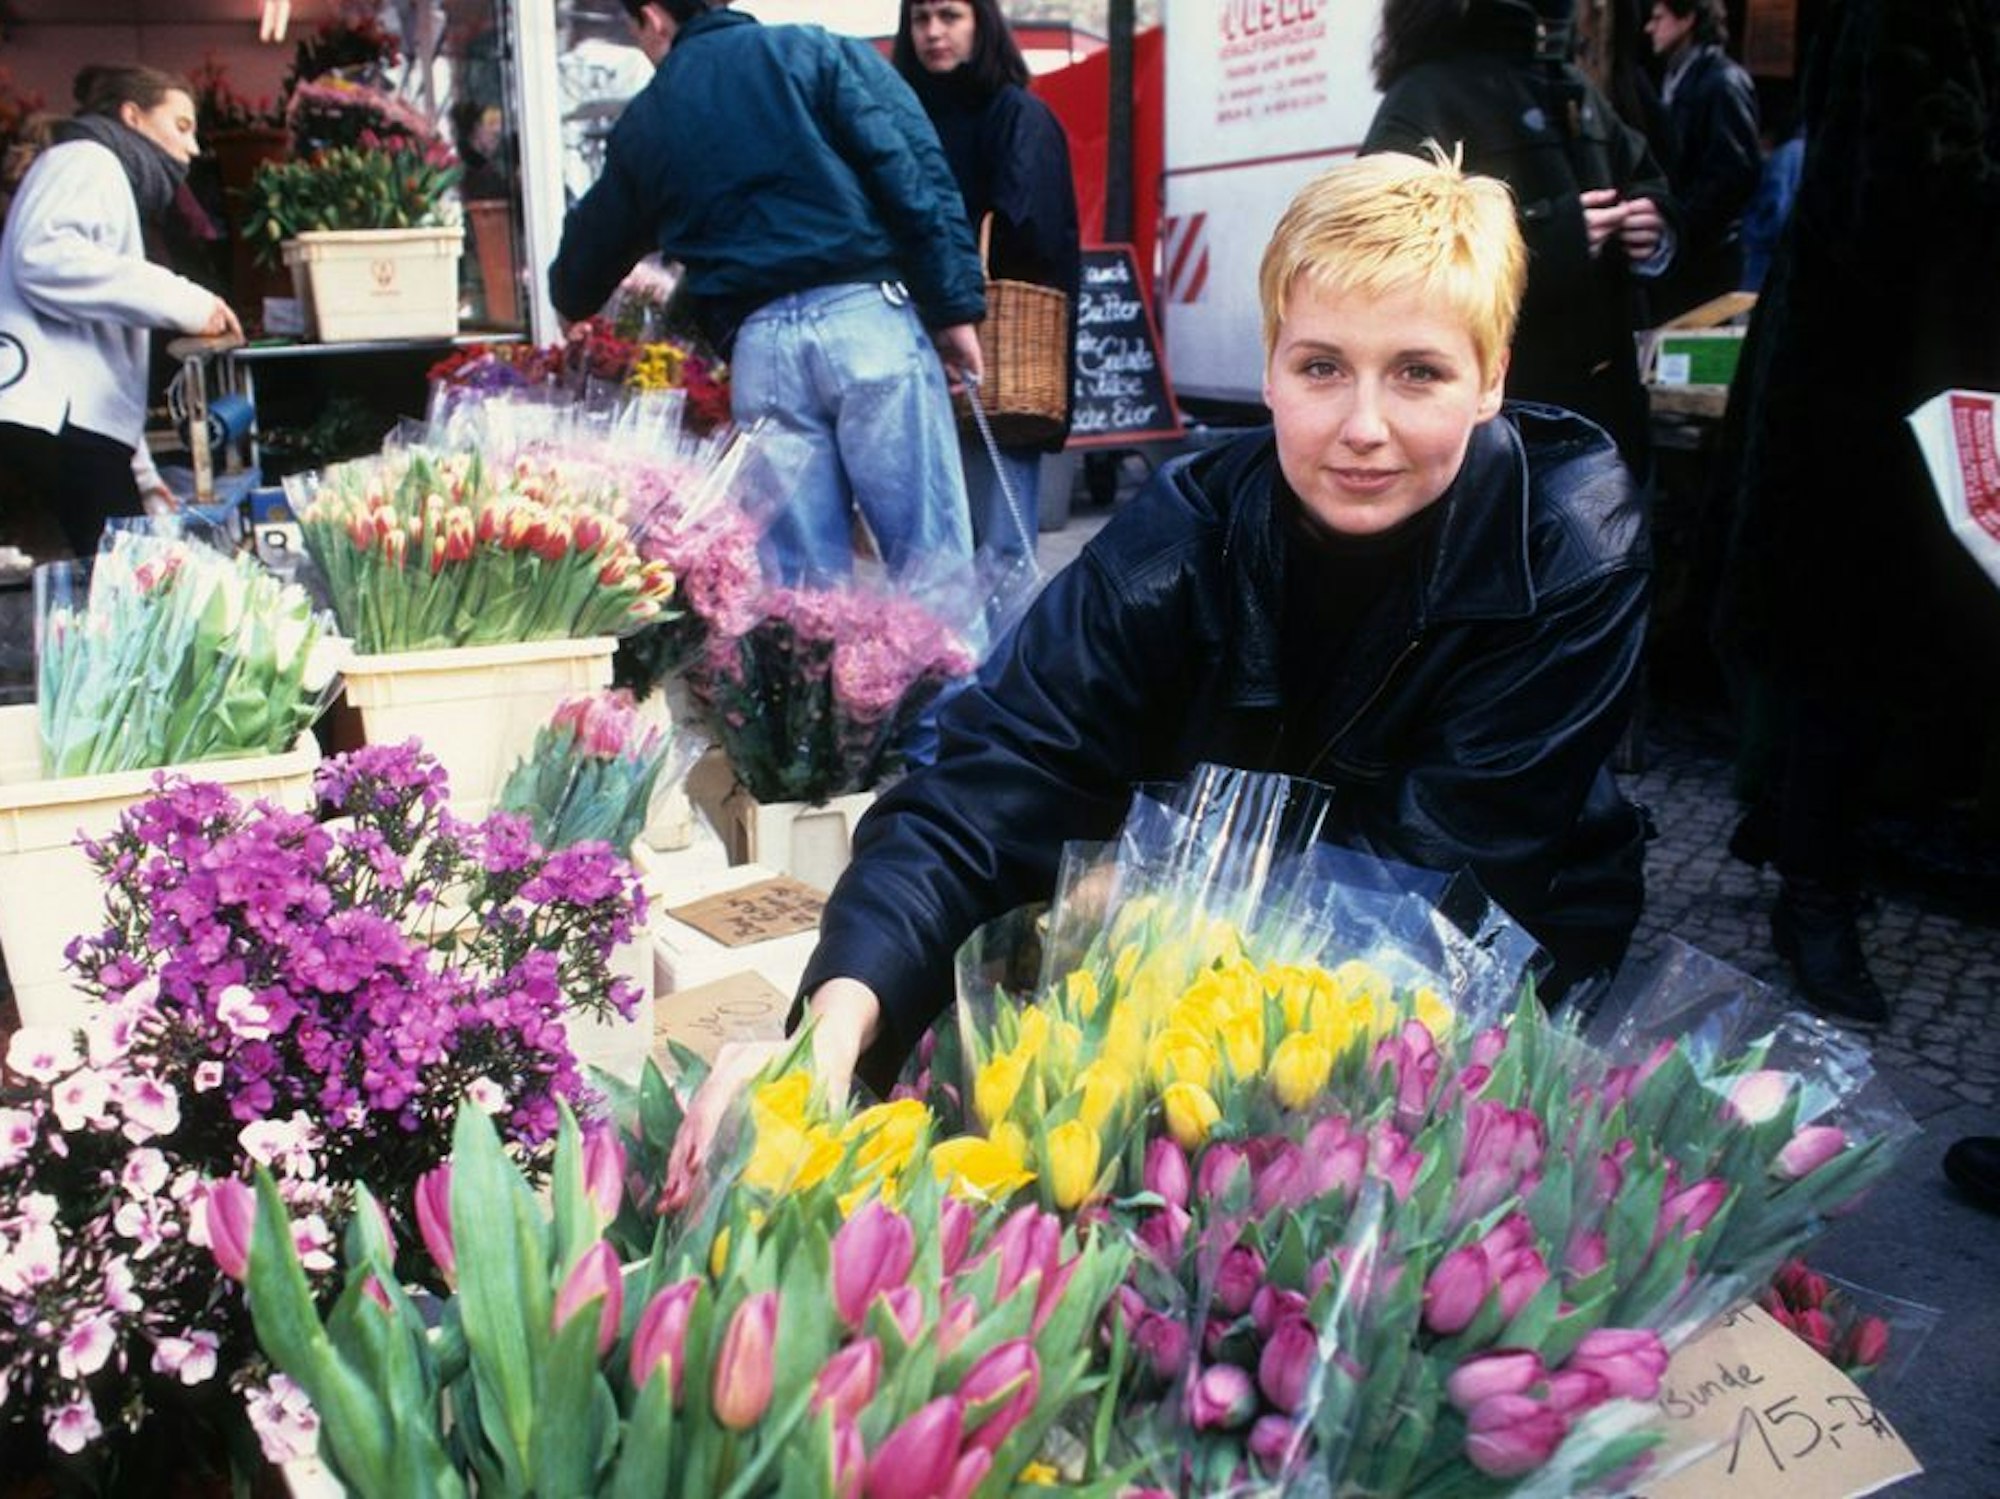 Eine junge Frau mit kurzen blonden Haaren und Lederjacke kauft Tulpen in einem Blumenladen.